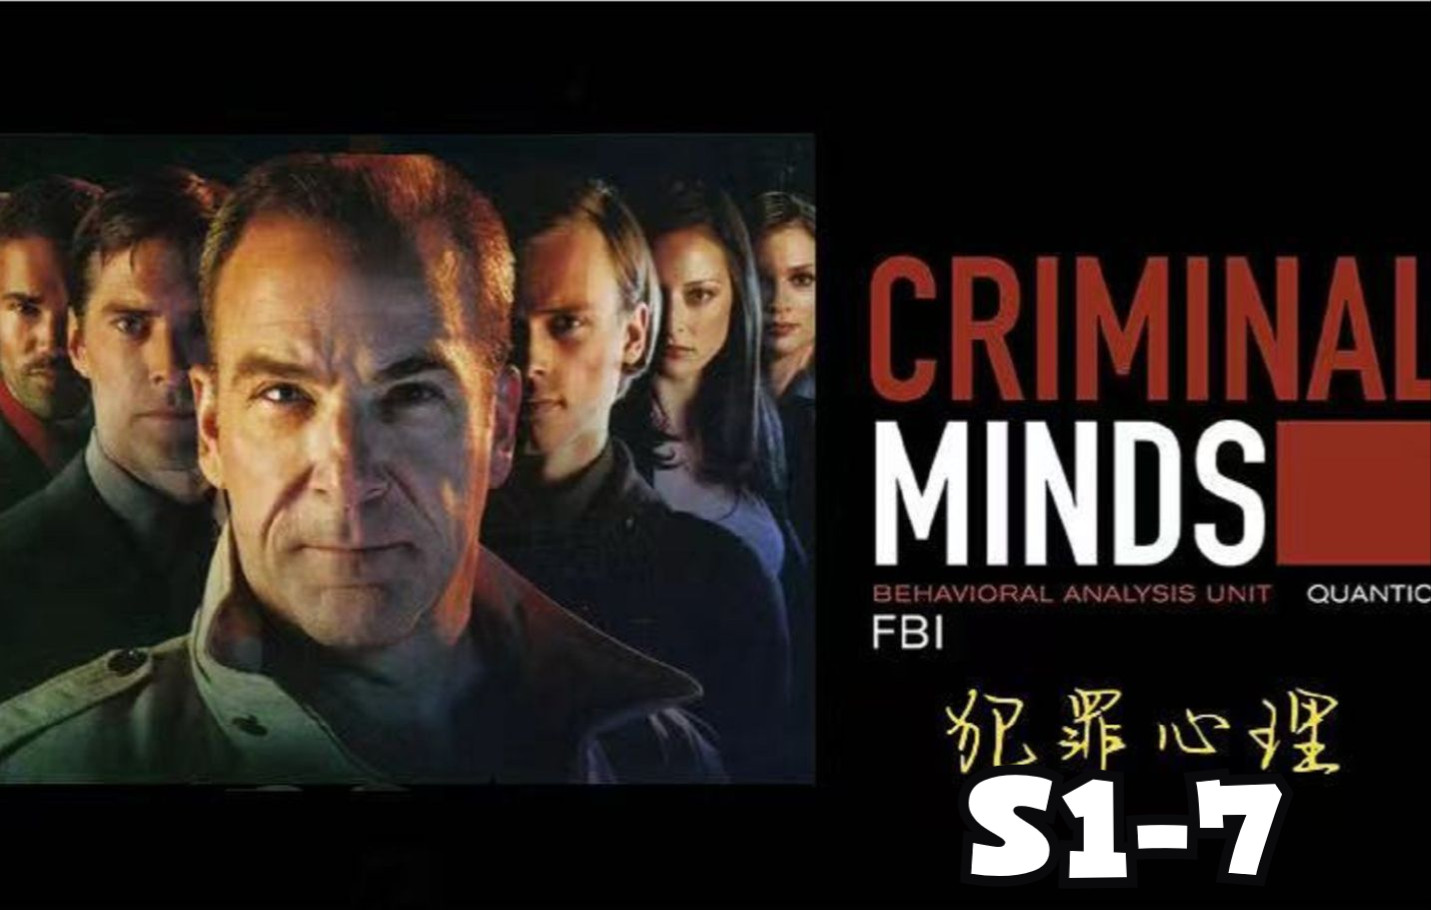 Criminal Minds 犯罪心理5 - 1280x1024 壁纸下载 - Criminal Minds 犯罪心理 - 影视壁纸 - V3壁纸站